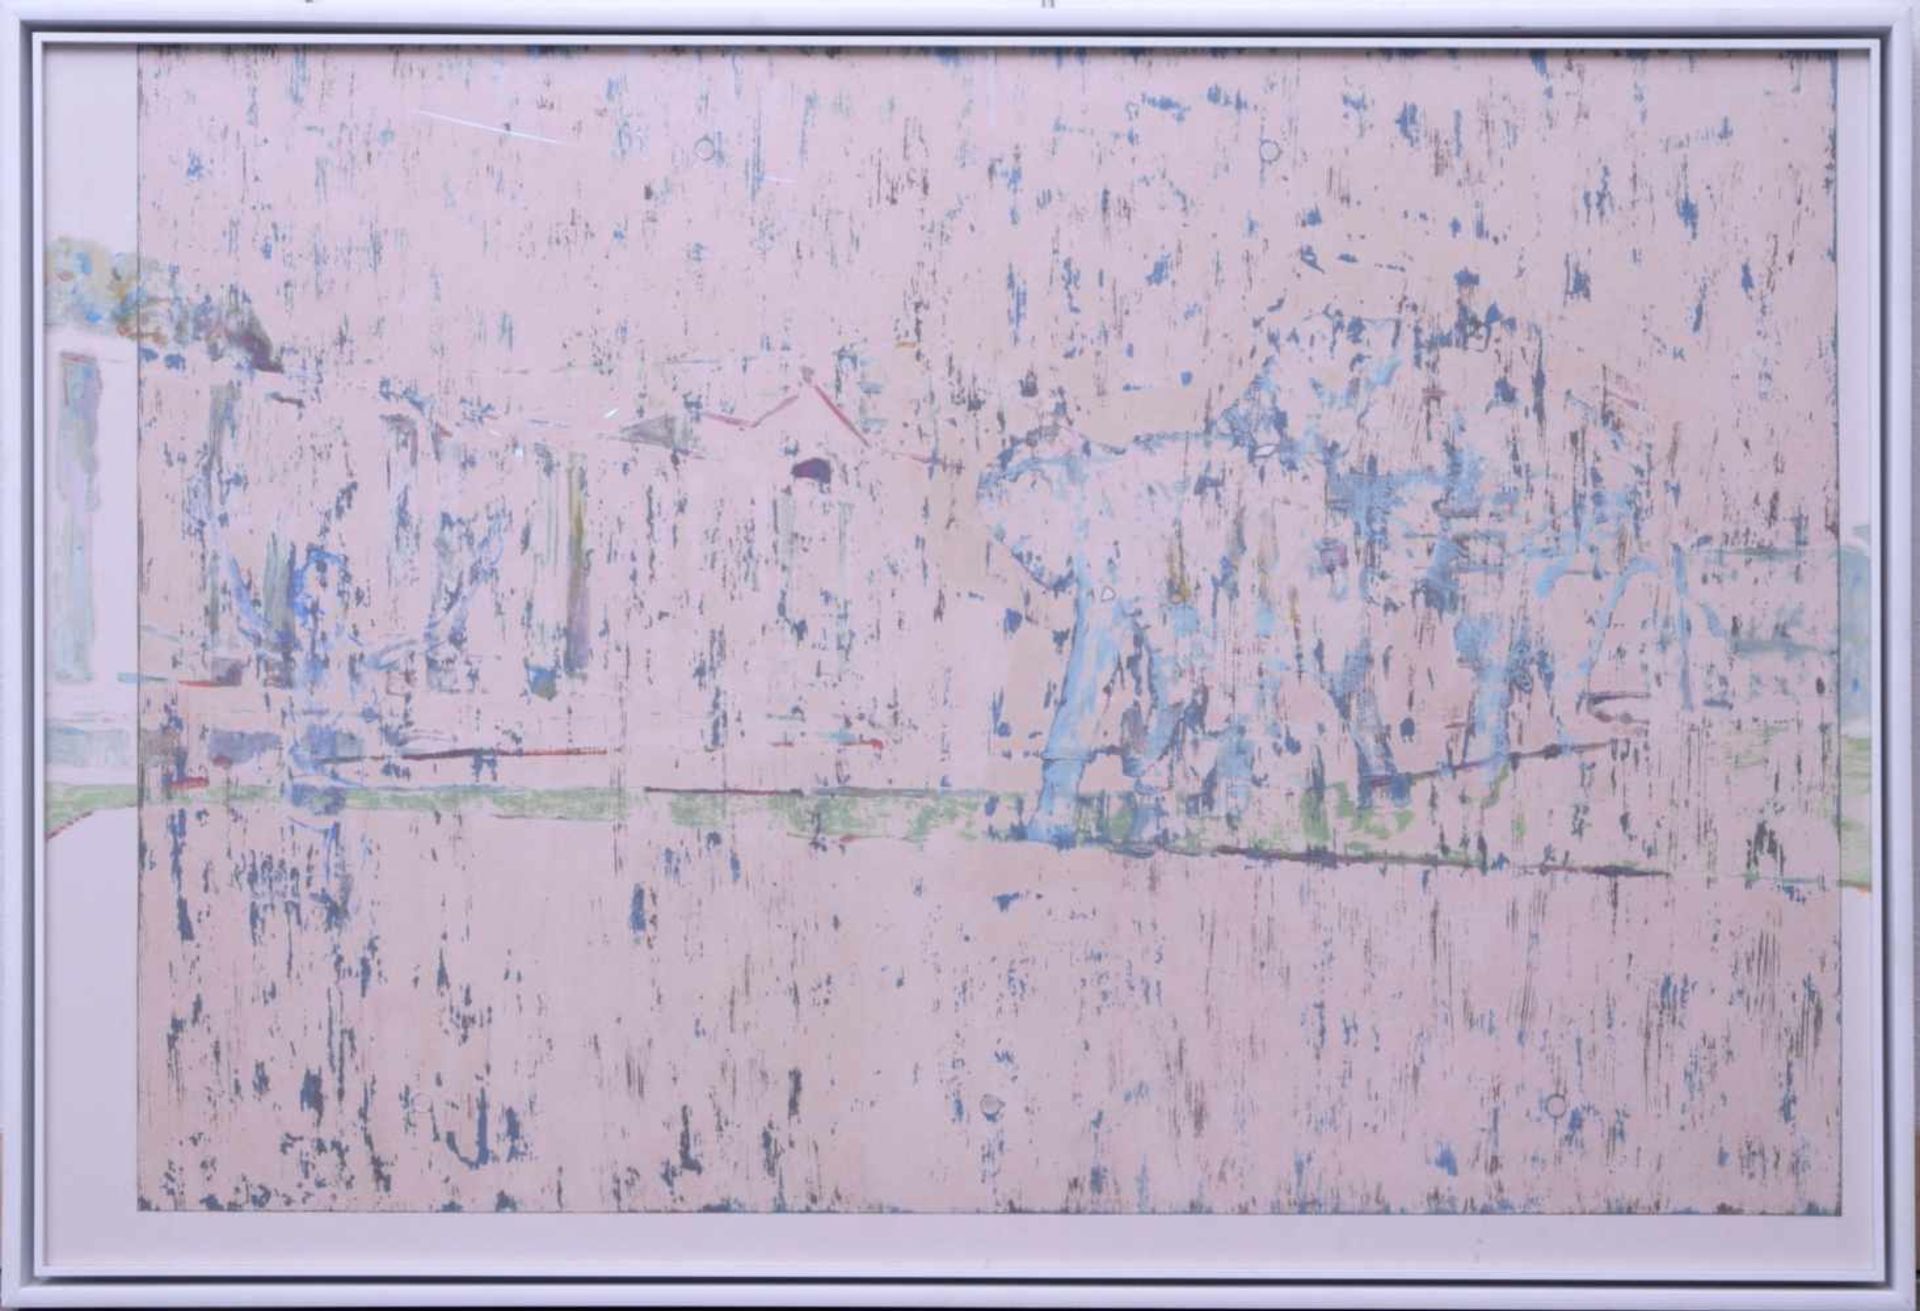 Dauphin, Peter genannt Muth (Nürnberg 1957) - Großformatiges Gemälde SavanneAbstraktes Querformat,